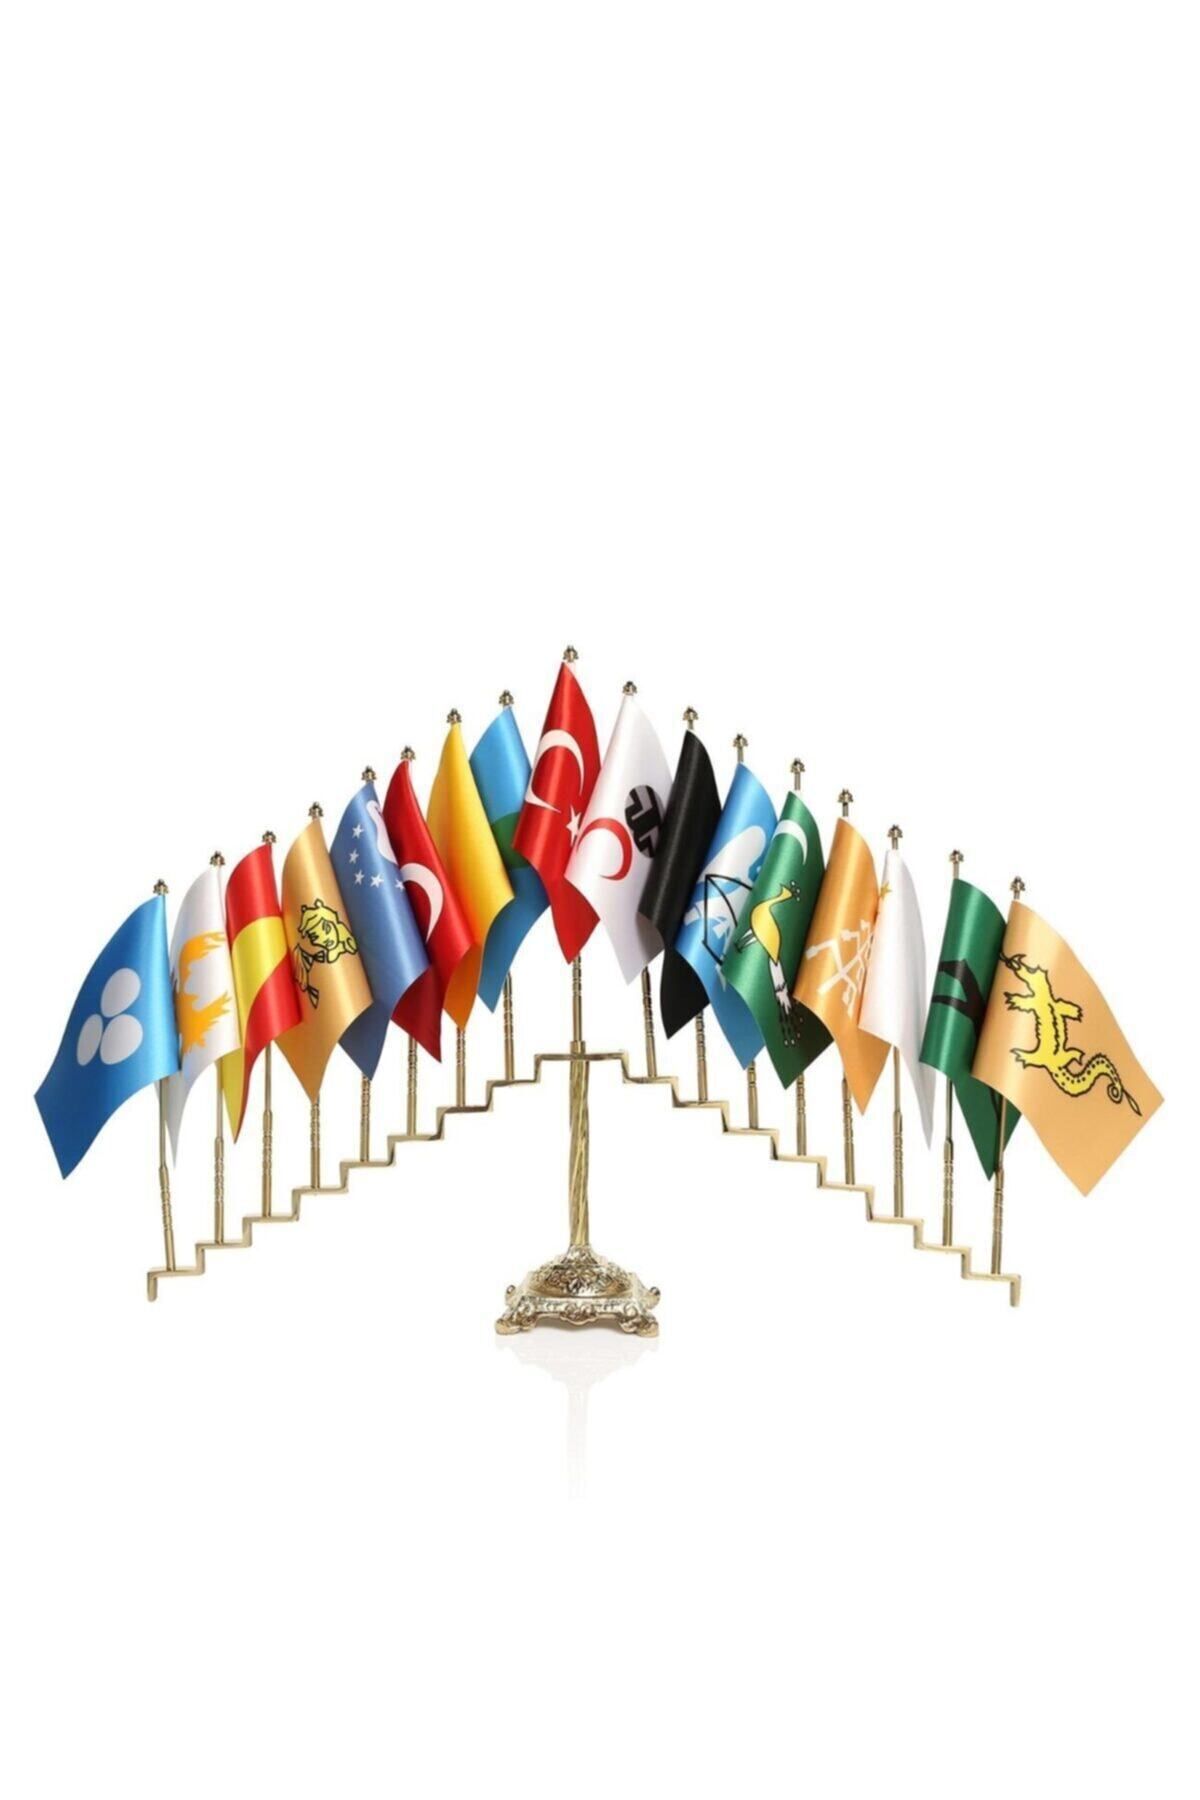 hazar bayrak 17li Türk Devletleri Bayrak Seti Prinç Kaideli